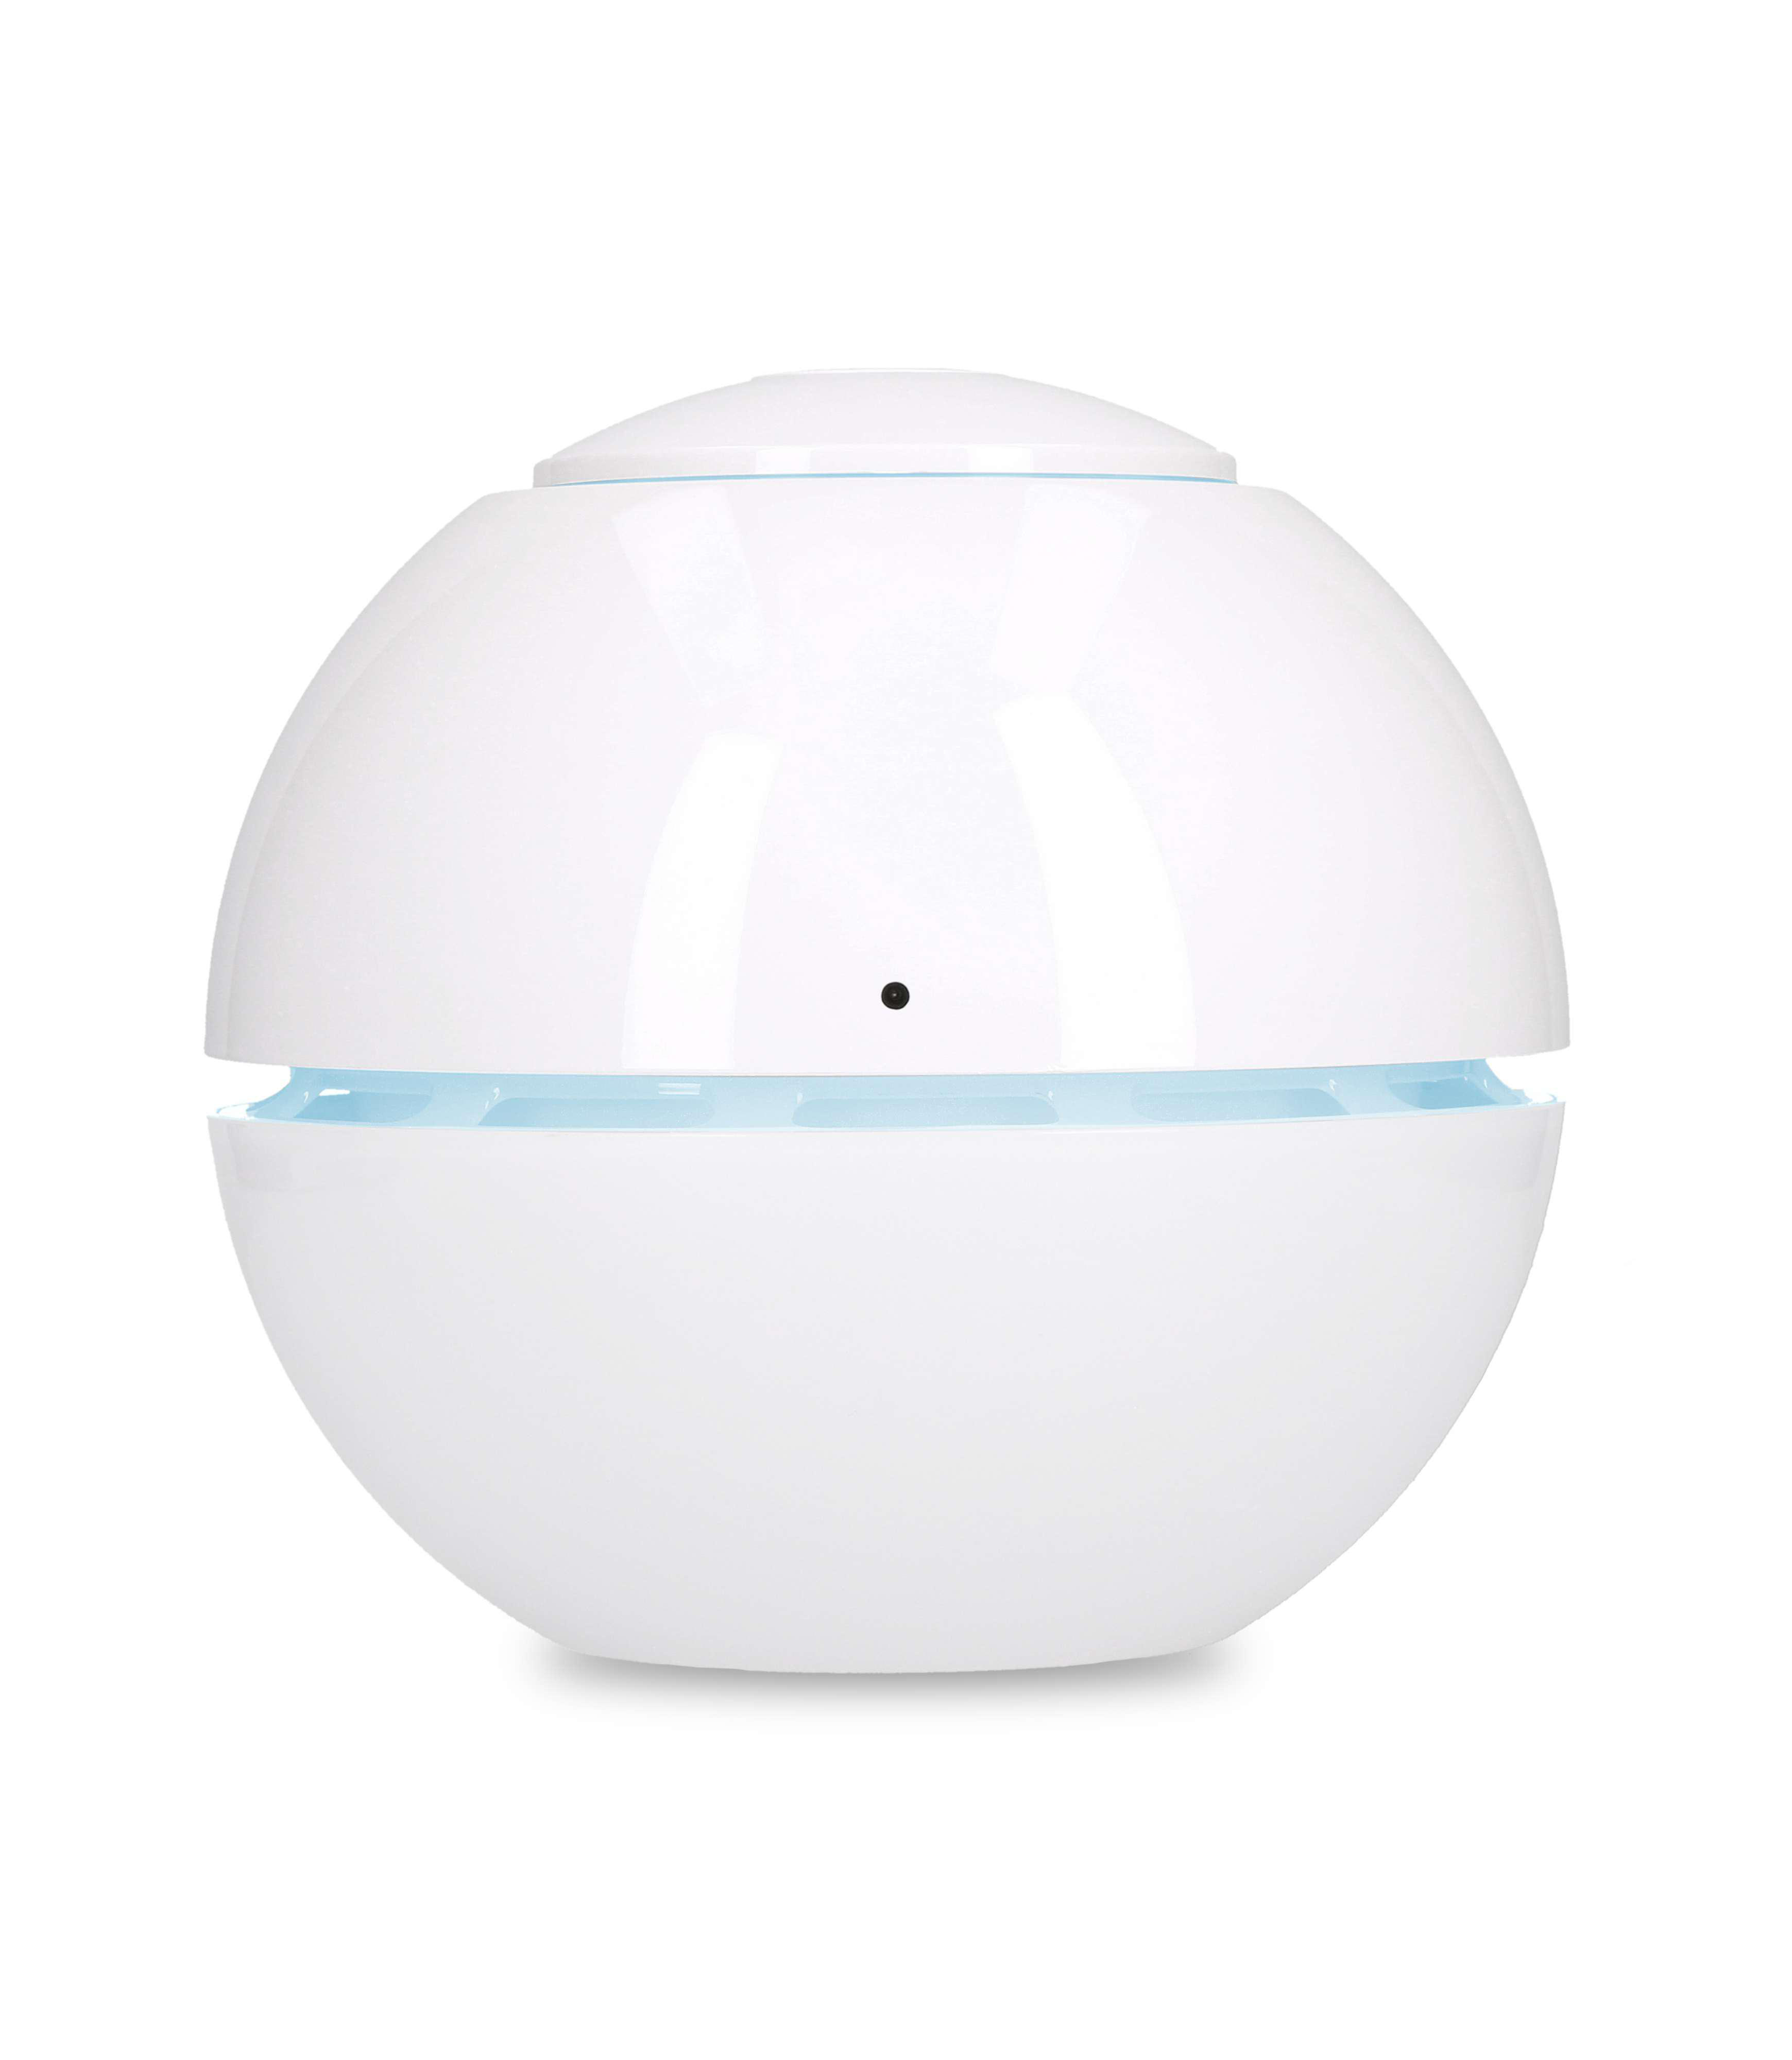 DUUX DXUH04 Sphere Ultrasonic Luftbefeuchter Watt, m²) 15 Weiß Raumgröße: (15